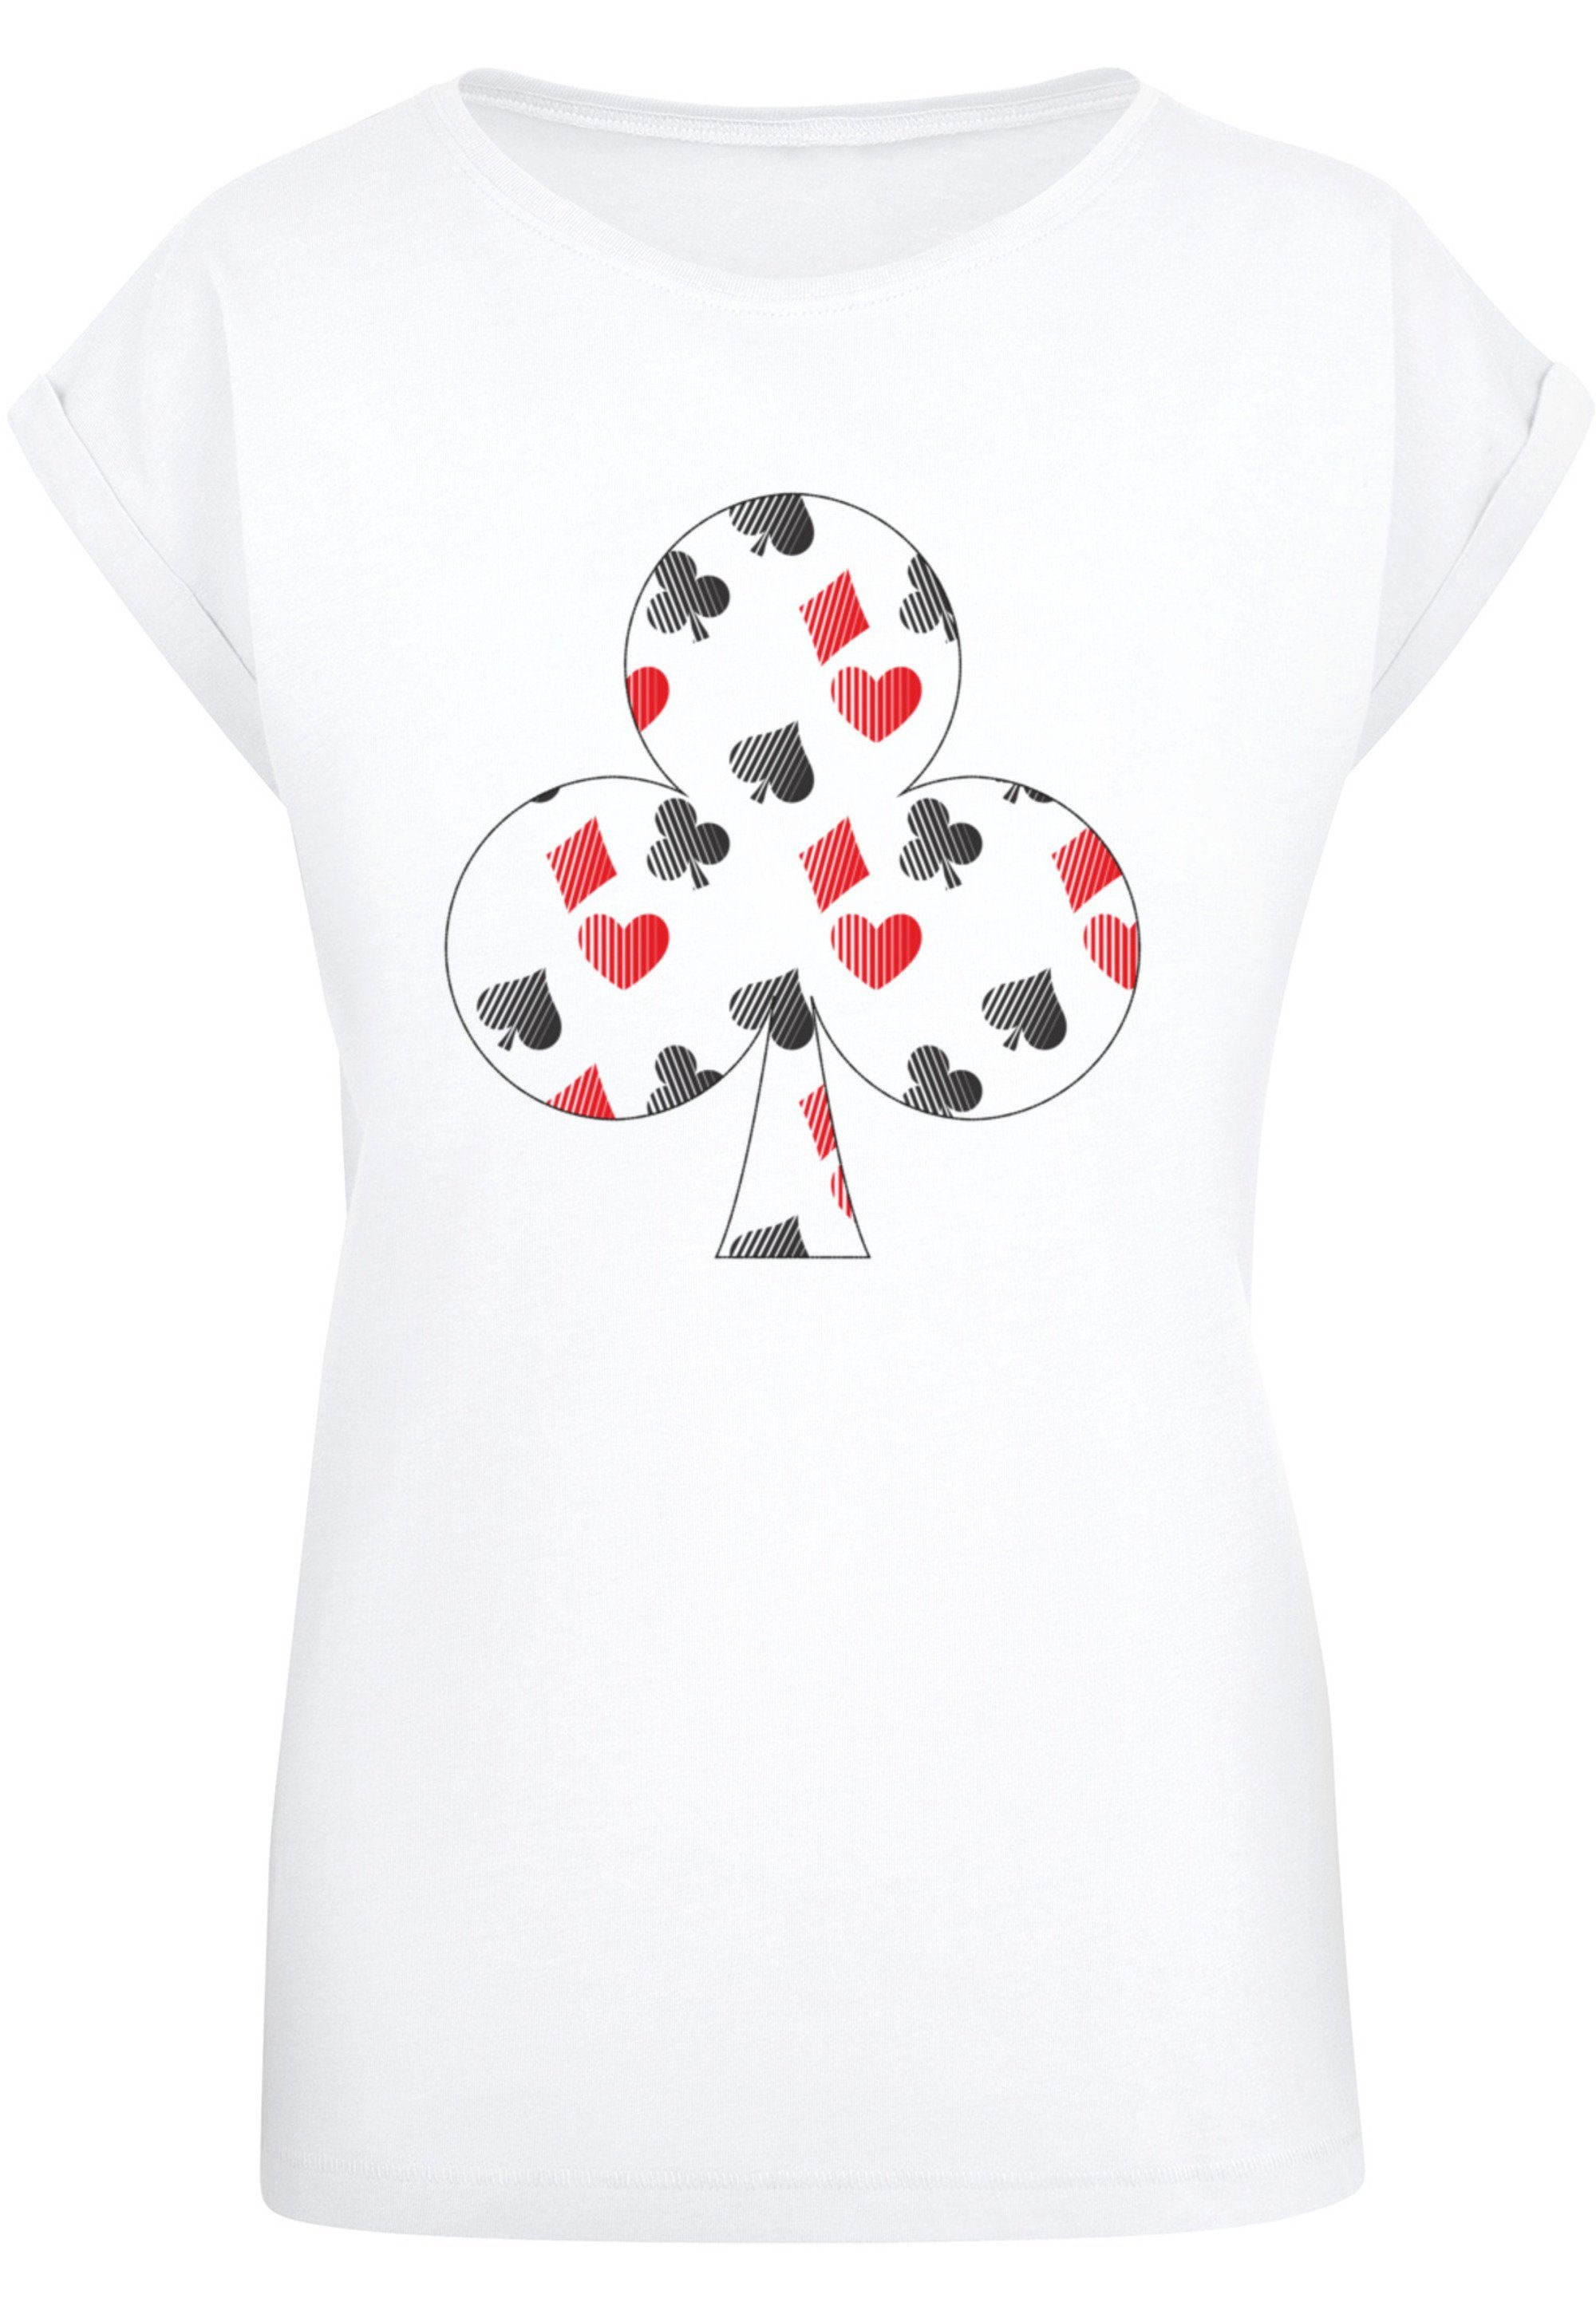 F4NT4STIC T-Shirt Kartenspiel Kreuz Herz Karo Pik Poker Print, Das Model  ist 170 cm groß und trägt Größe M